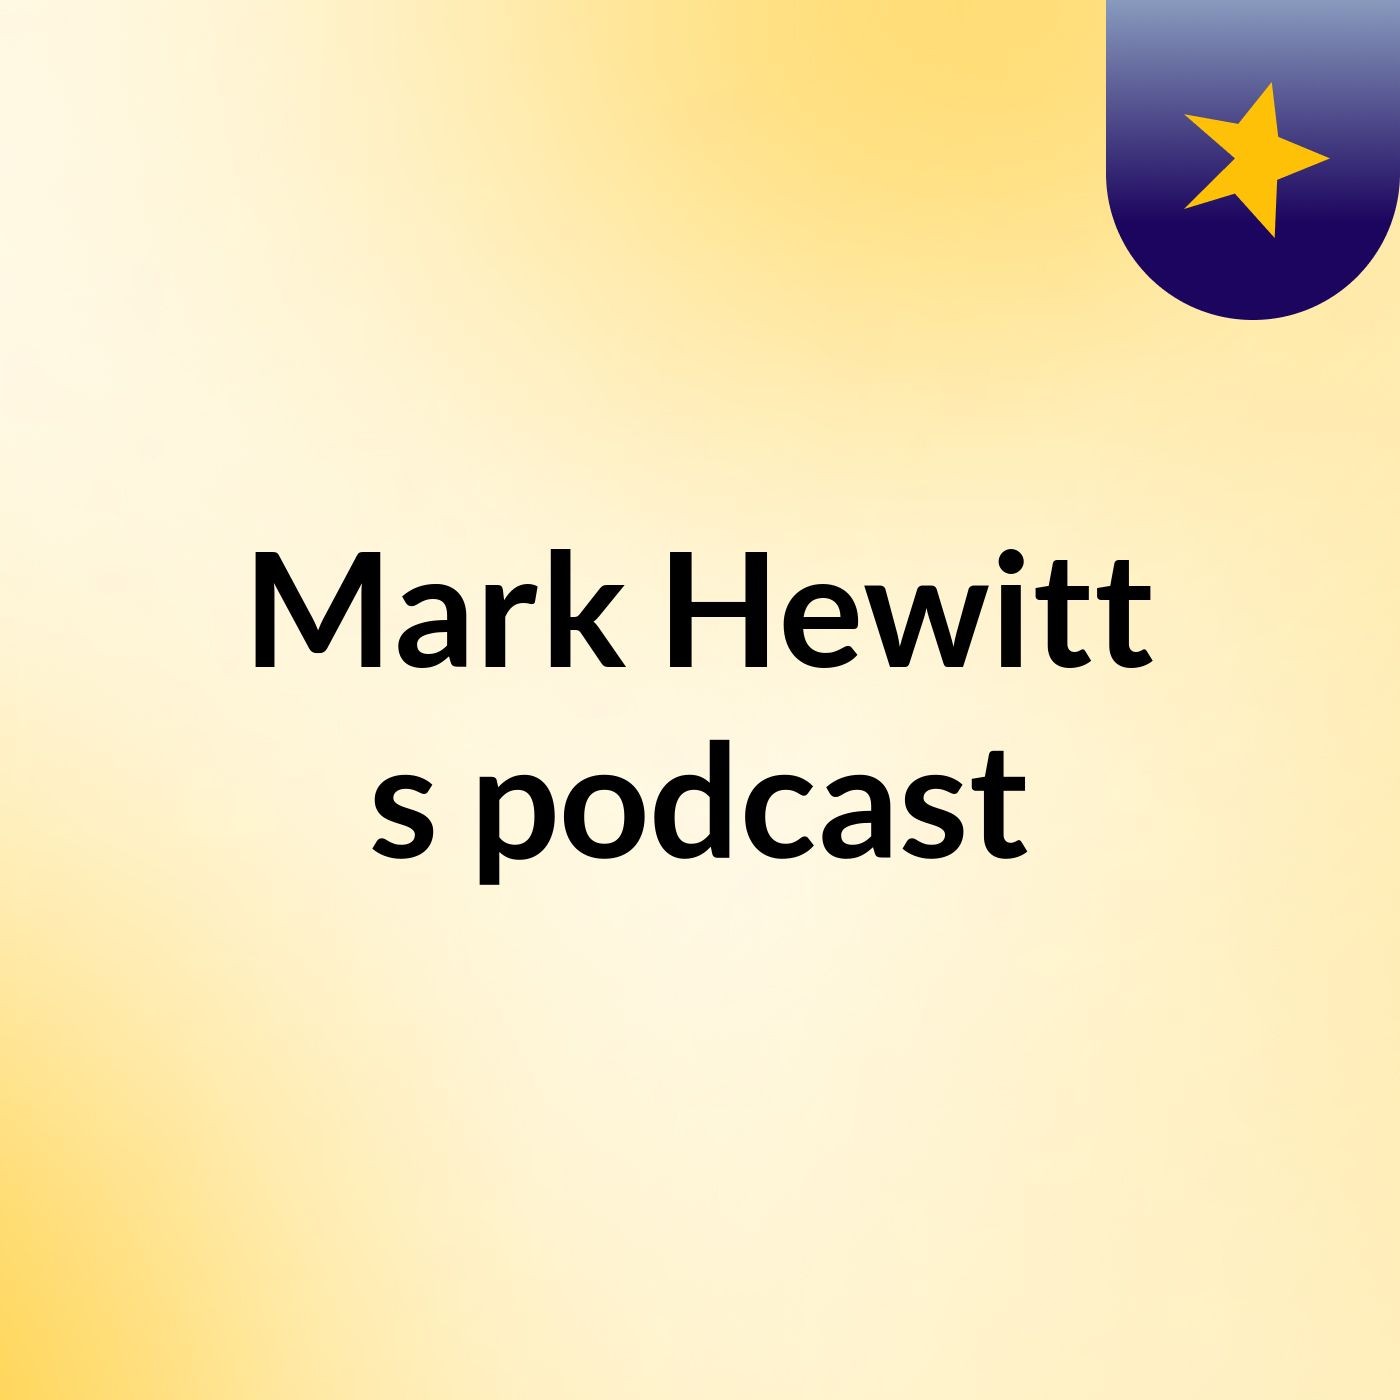 Mark Hewitt's podcast